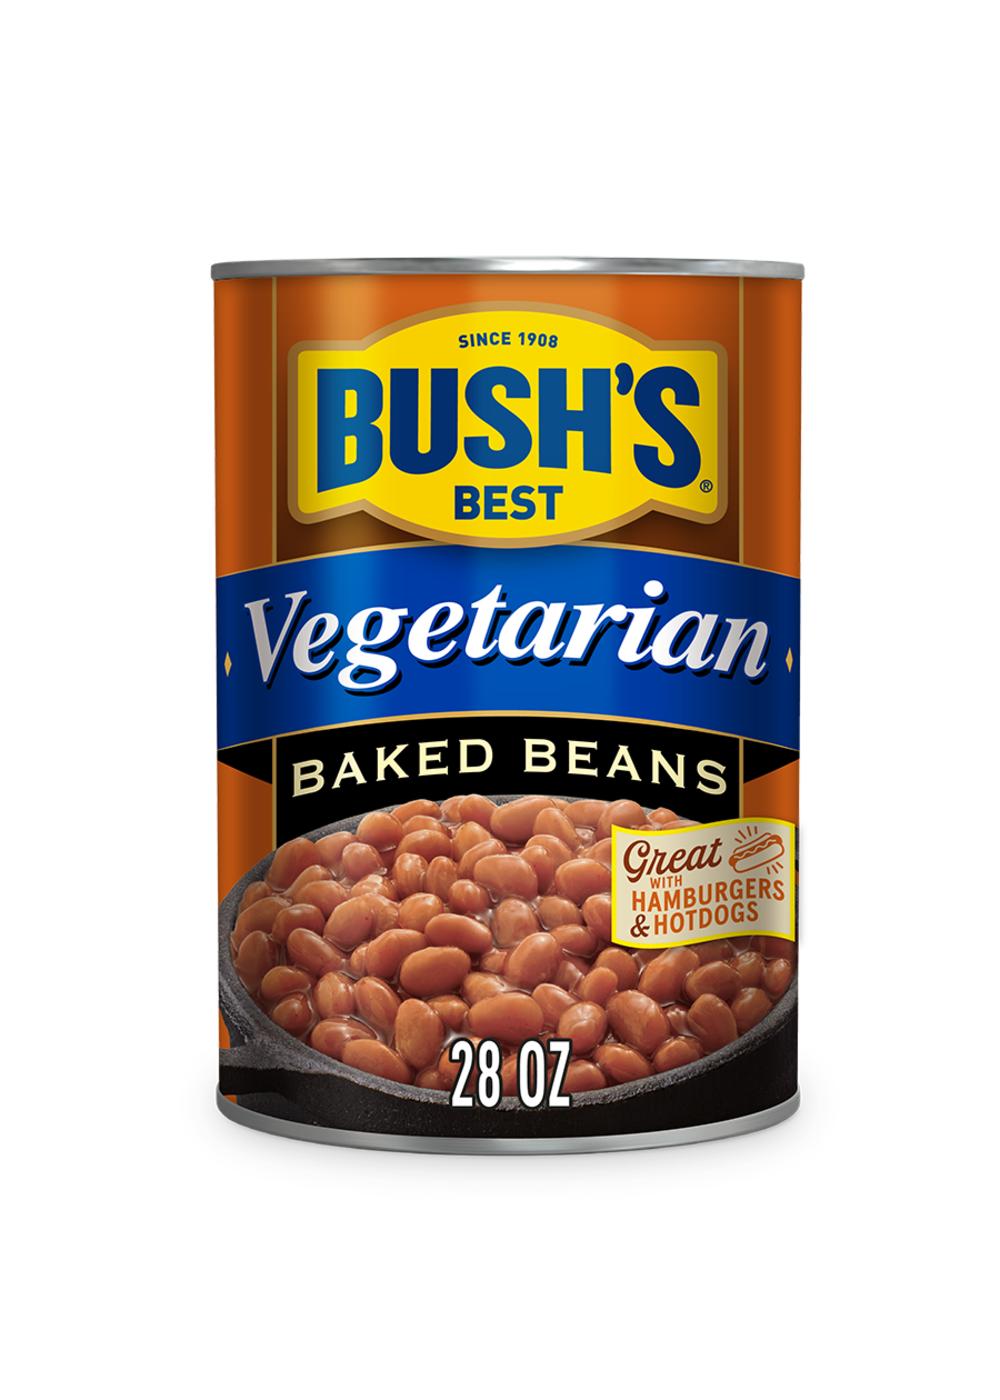 Bush's Best Vegetarian Baked Beans; image 1 of 3